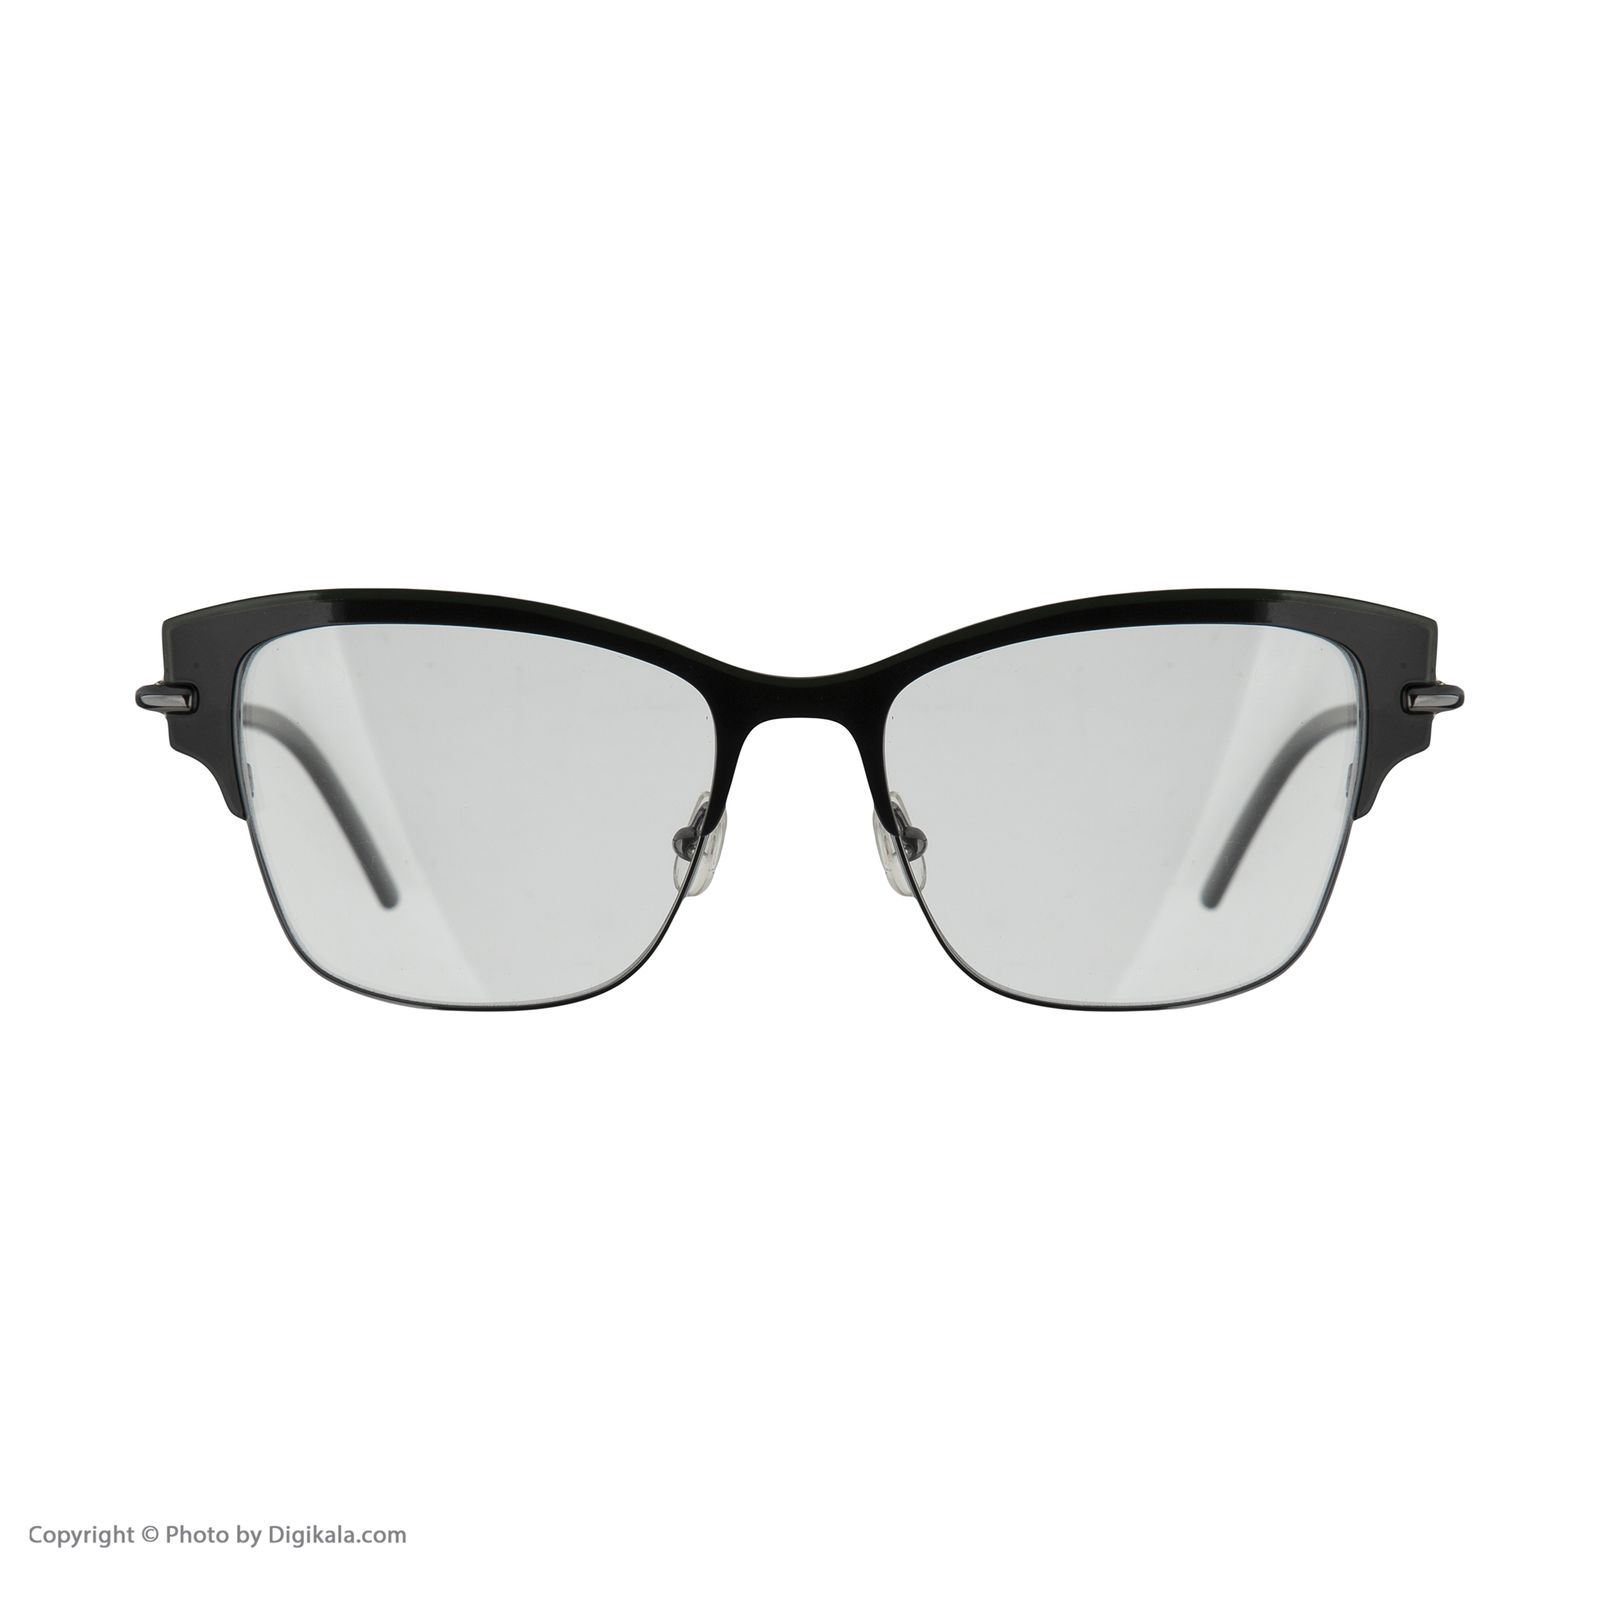 فریم عینک طبی کارل لاگرفلد مدل KL278V501 -  - 2